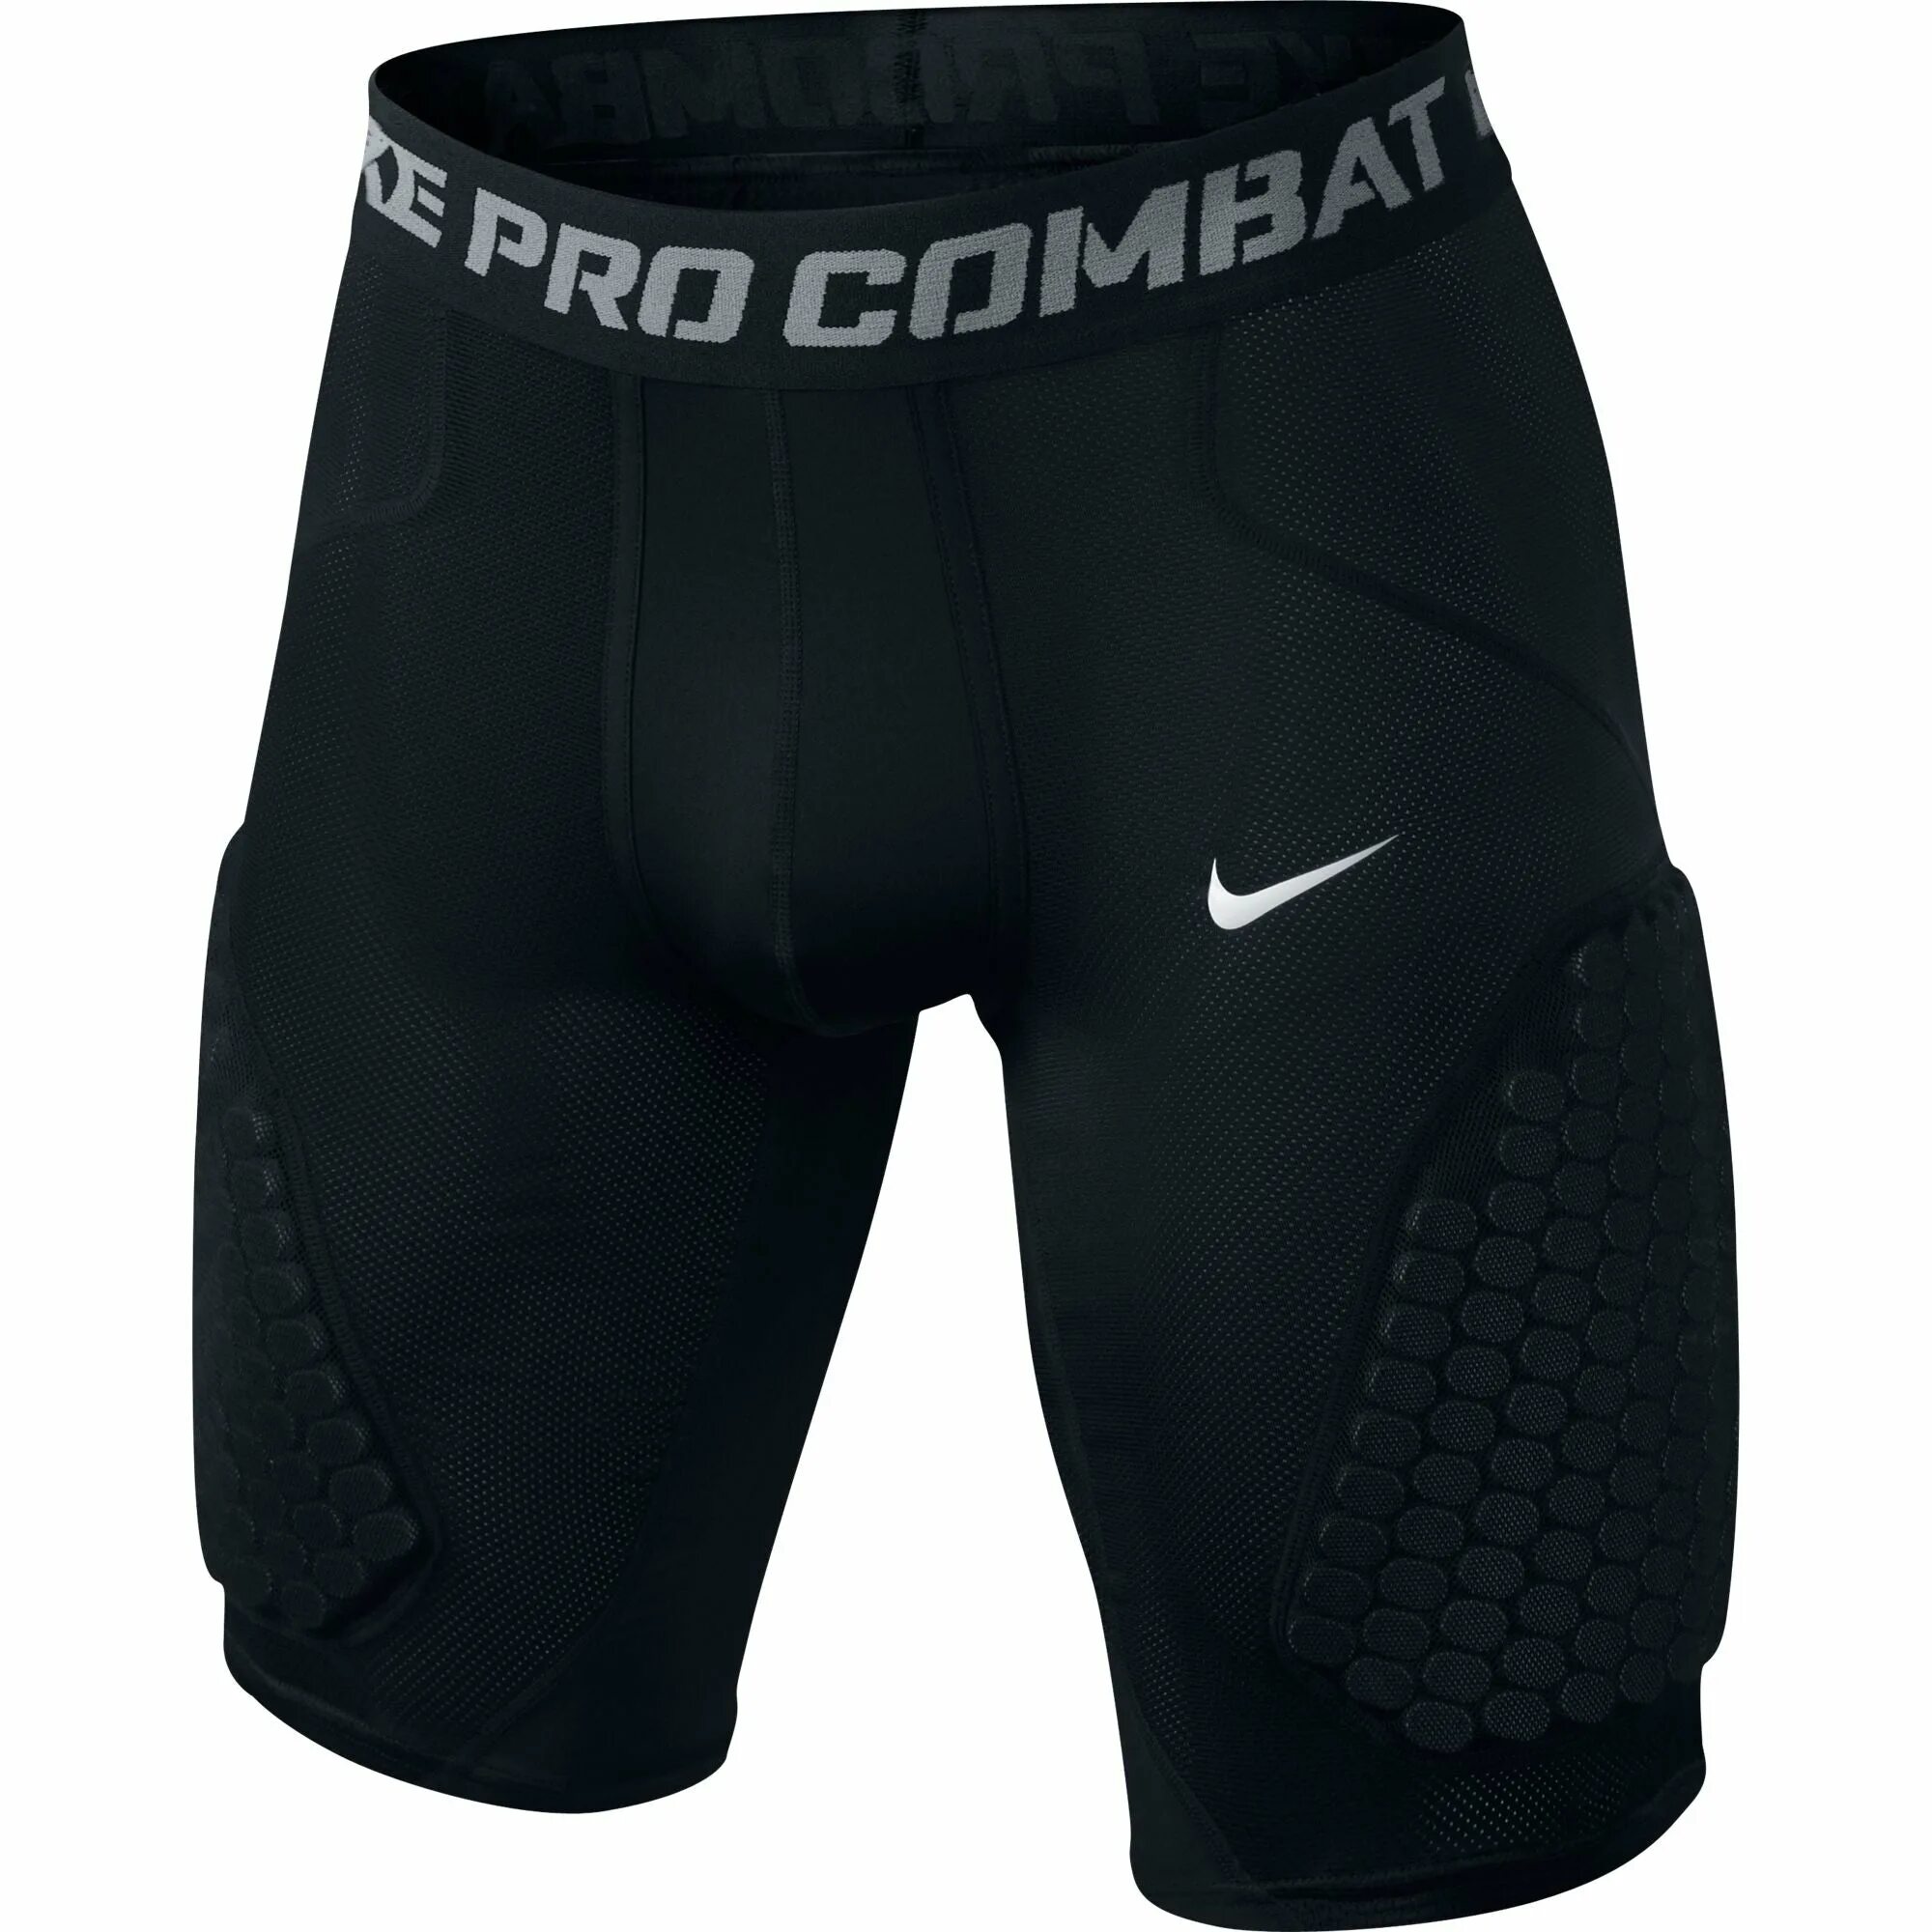 Nike combat. Nike Pro Combat шорты. Nike Pro Combat Padded. Nike Pro Combat Compression. Адидас Pro Combat шорты.